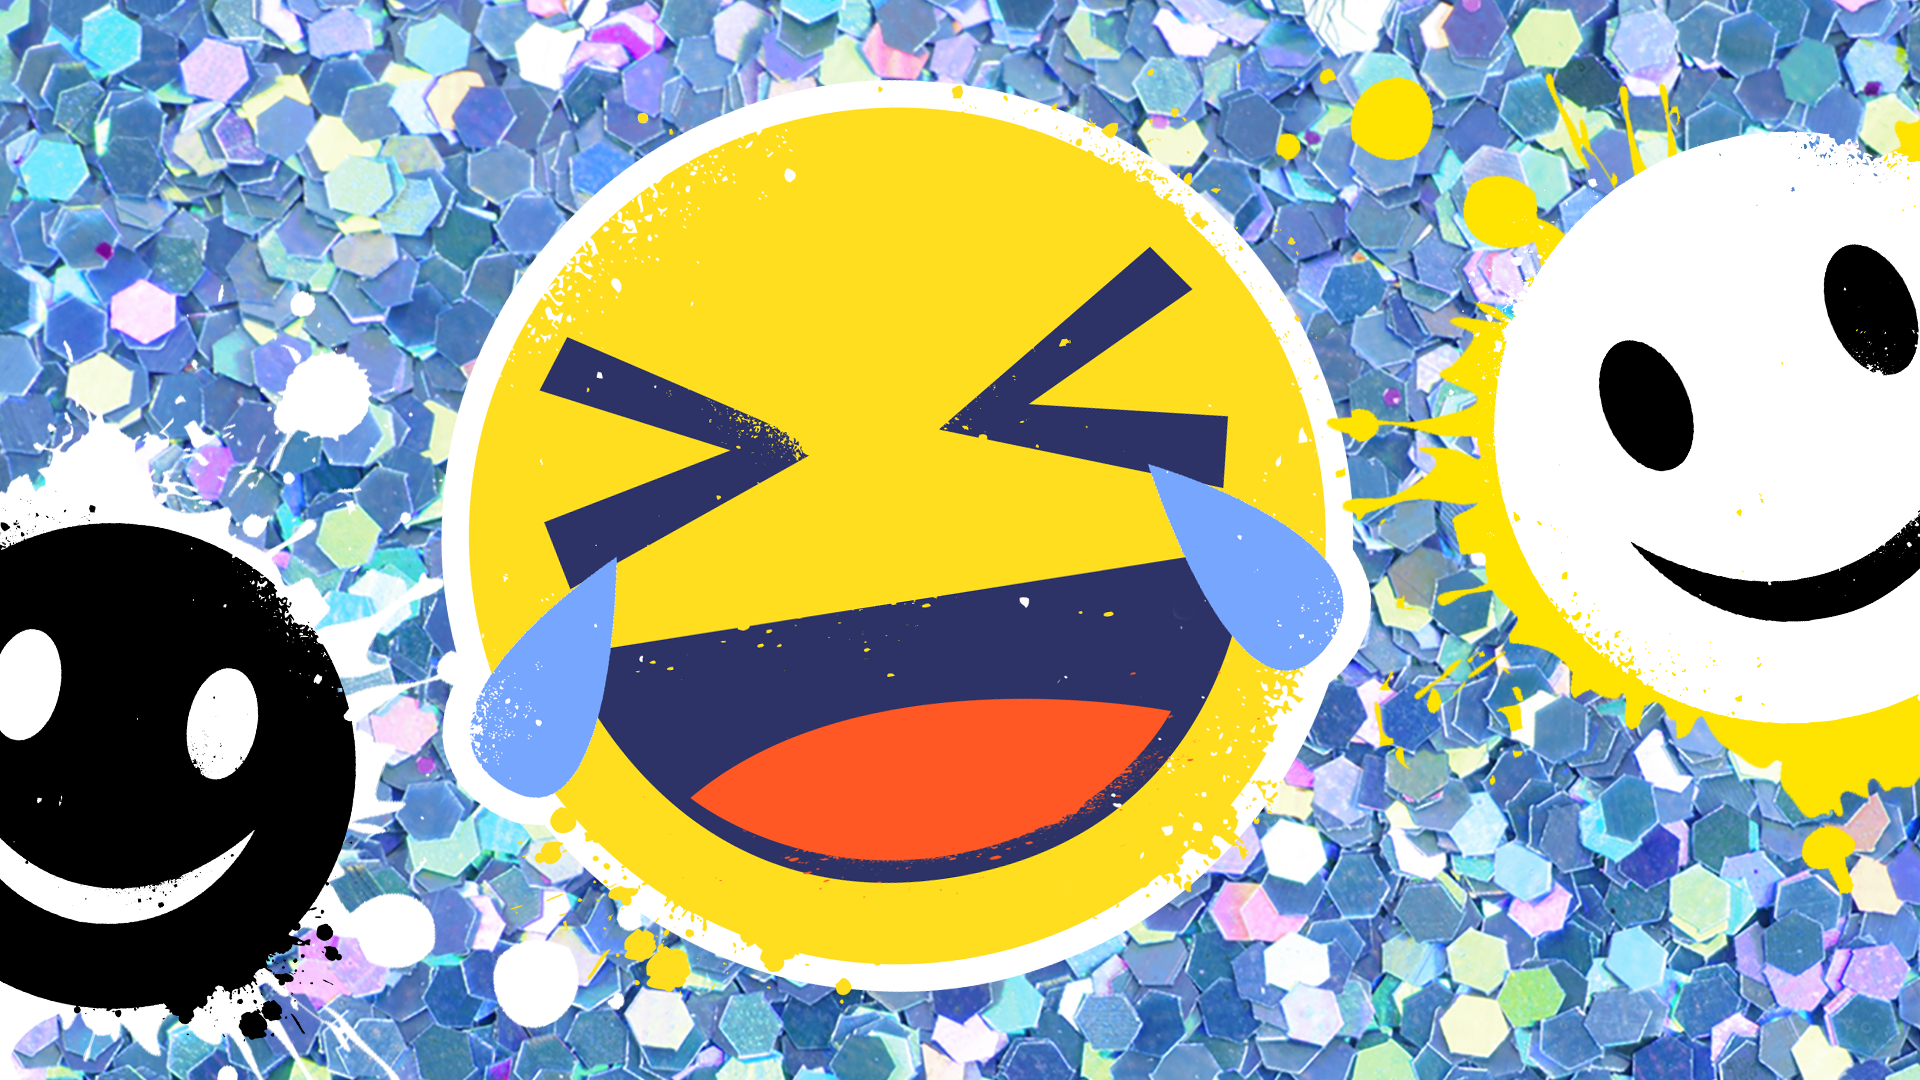 Laughing crying emoji face